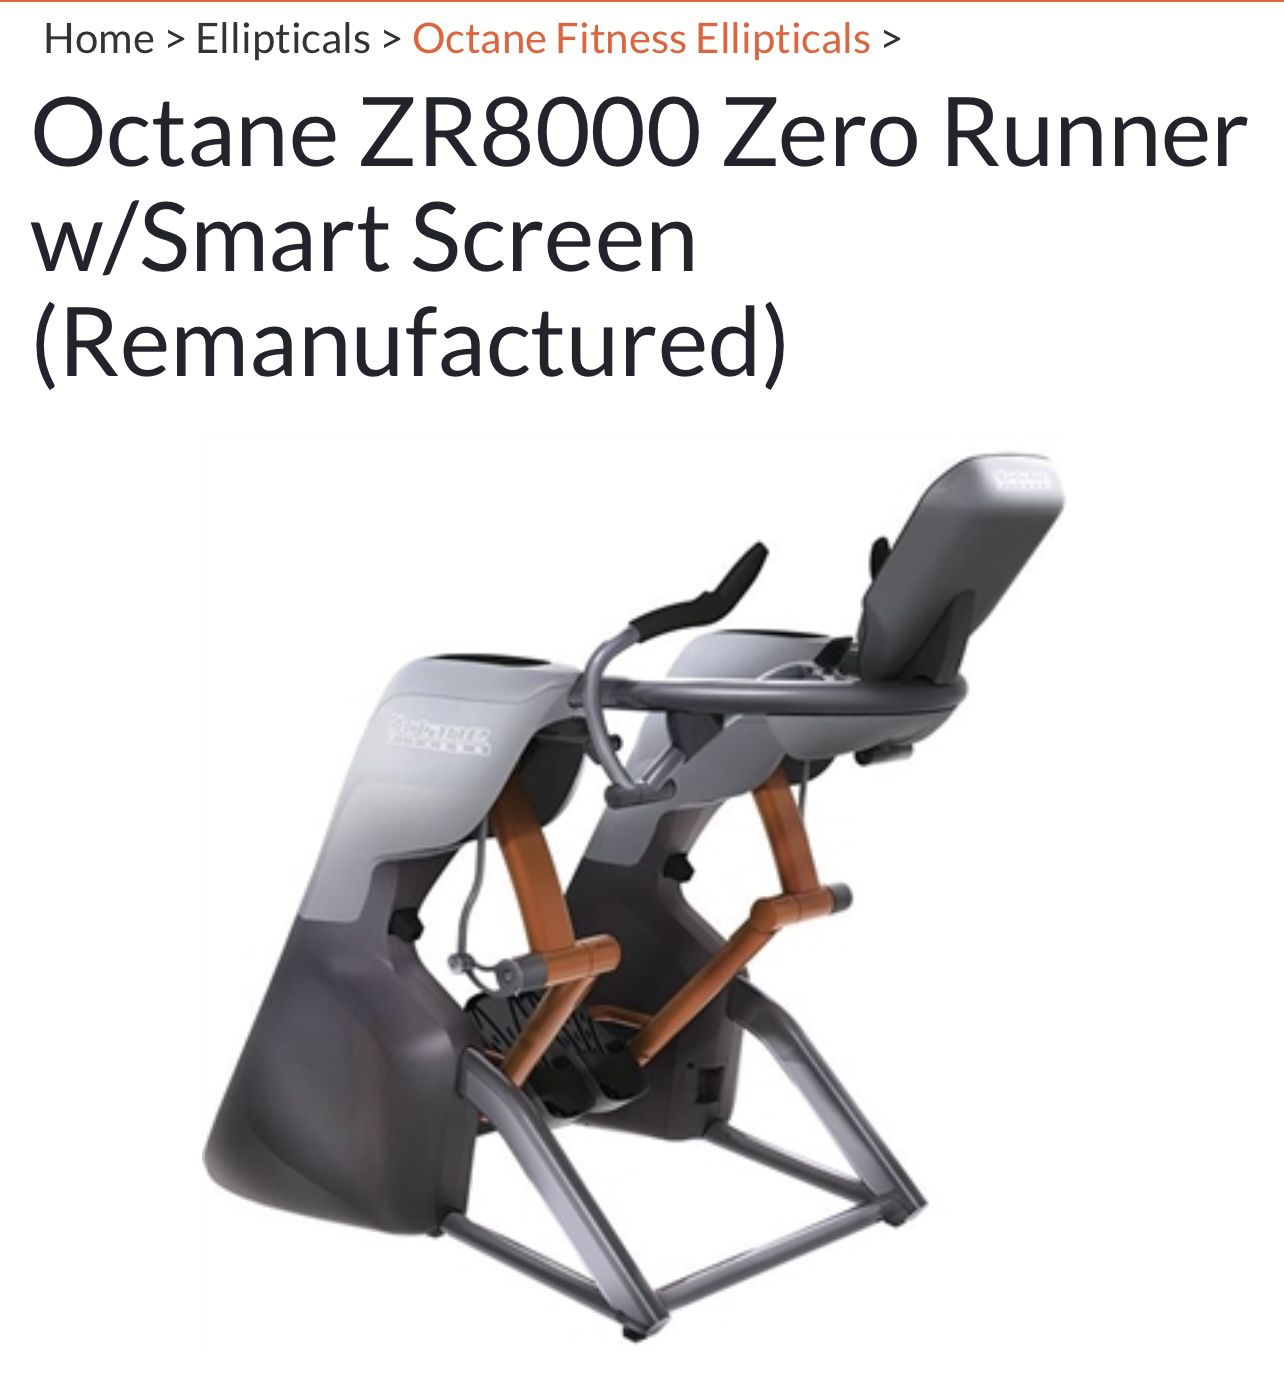 Octane Zr8000 Zero Runner